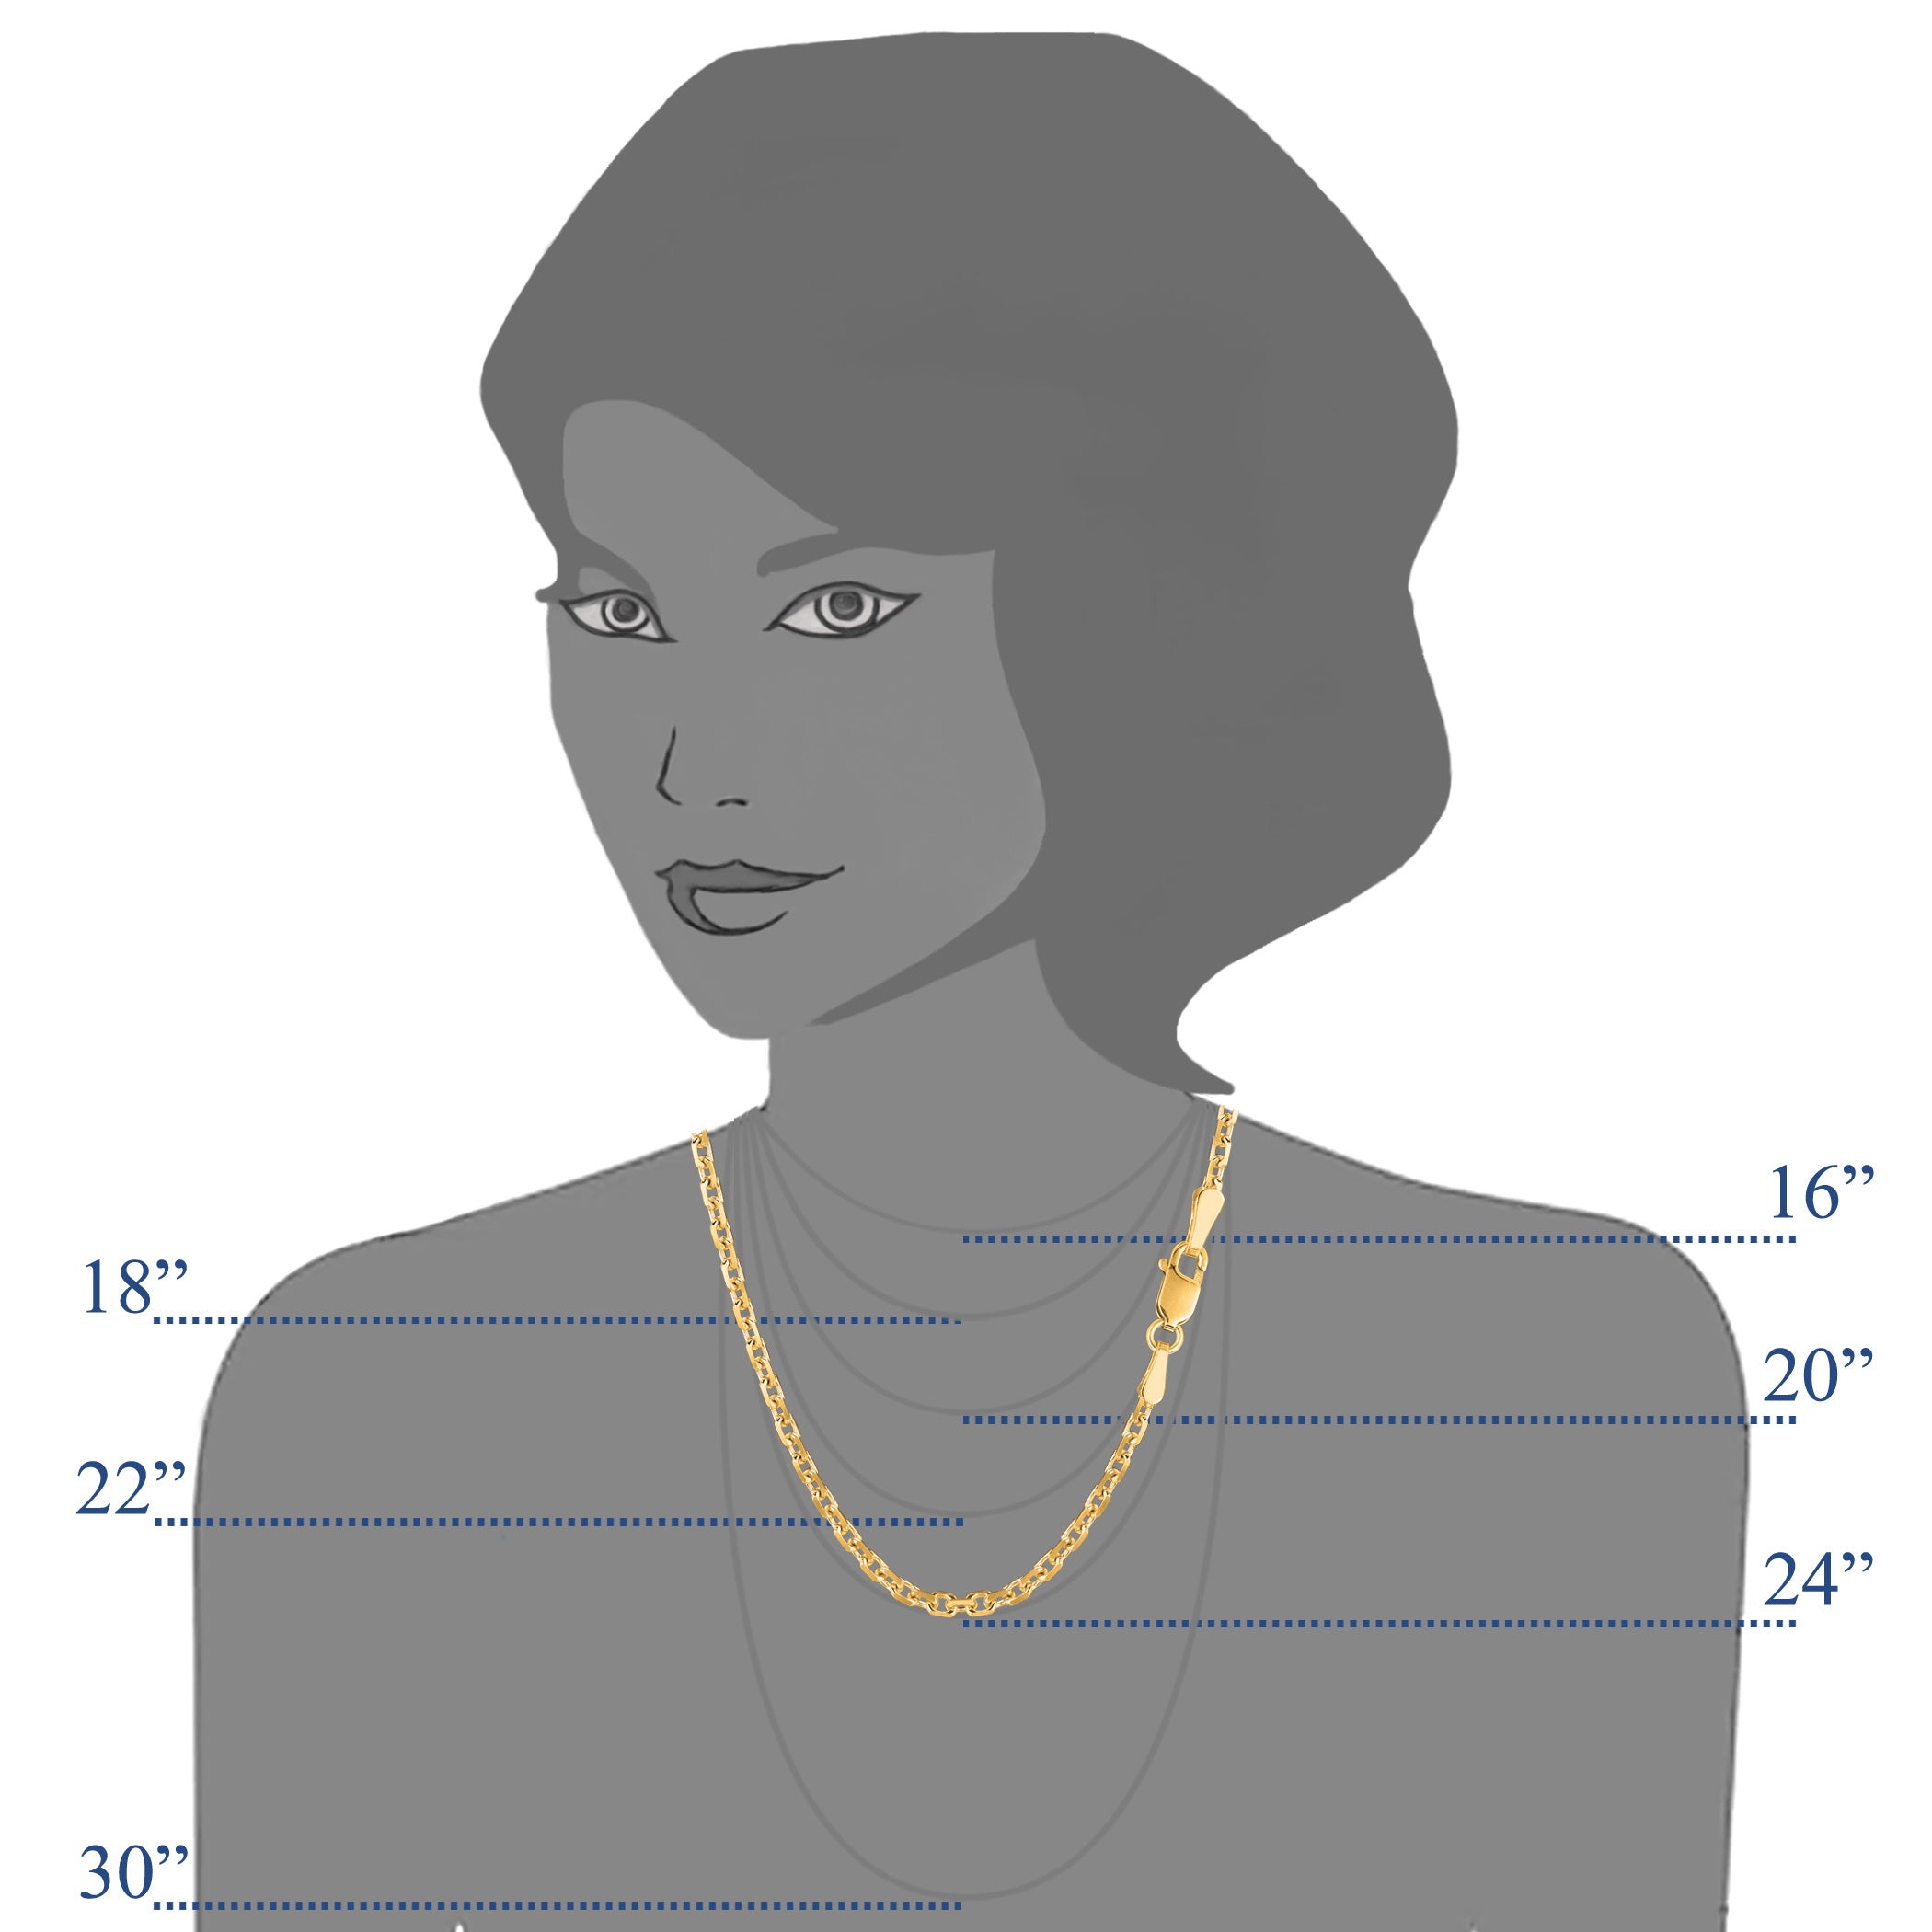 14 k gul guld kabelkæde halskæde, 3,1 mm fine designer smykker til mænd og kvinder